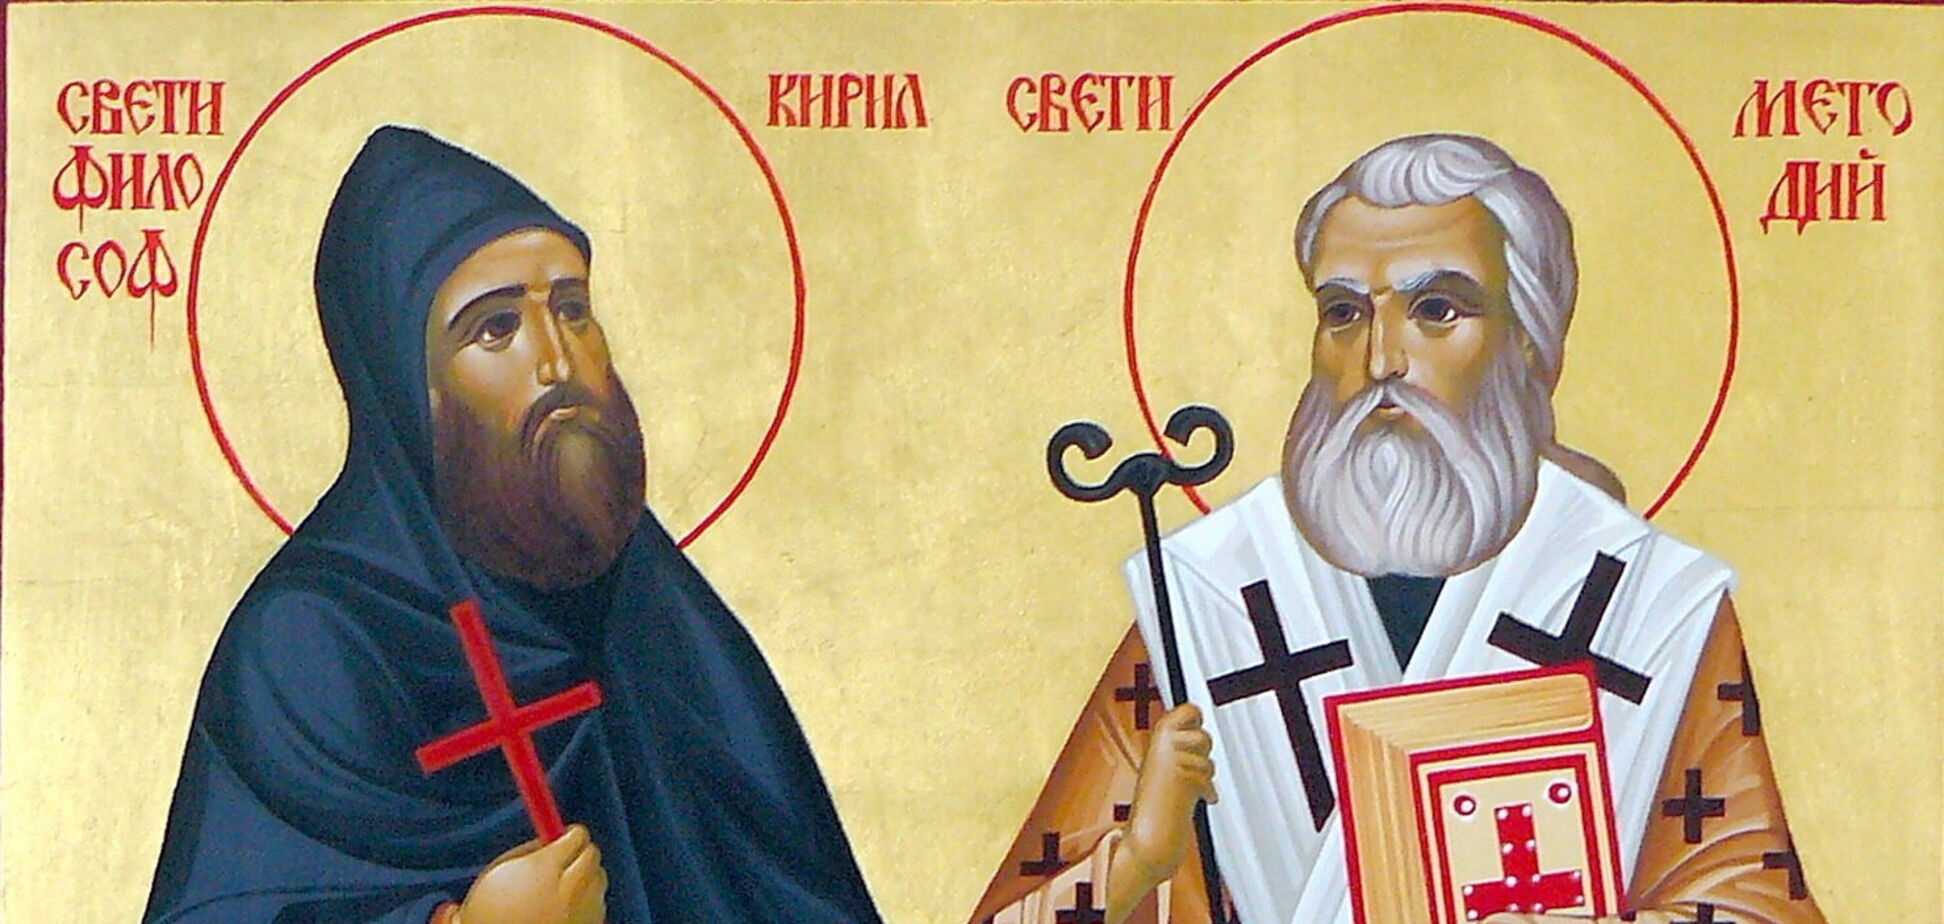 Кирило і Мефодій – просвітителі слов'ян, покровителі Європи і творці слов'янського алфавіту